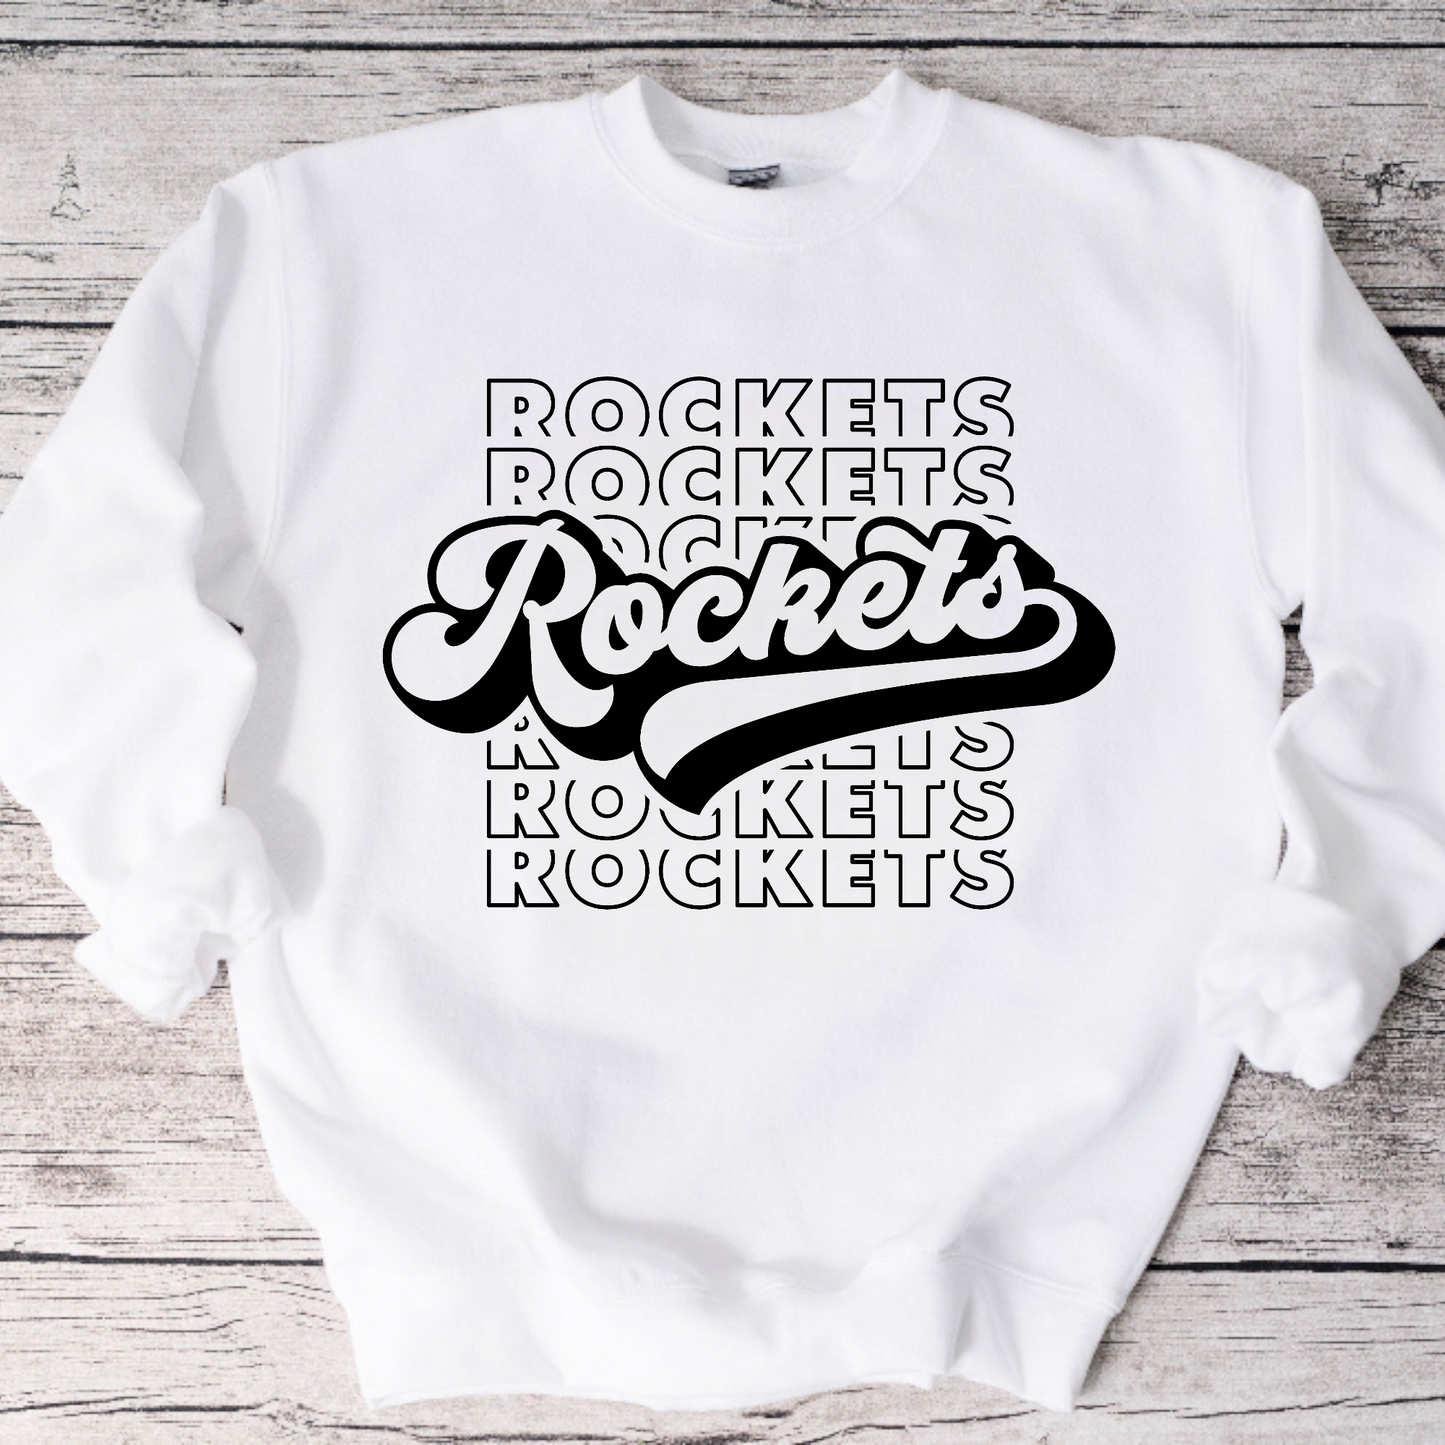 Retro Rockets Crewneck Sweatshirt or Tee